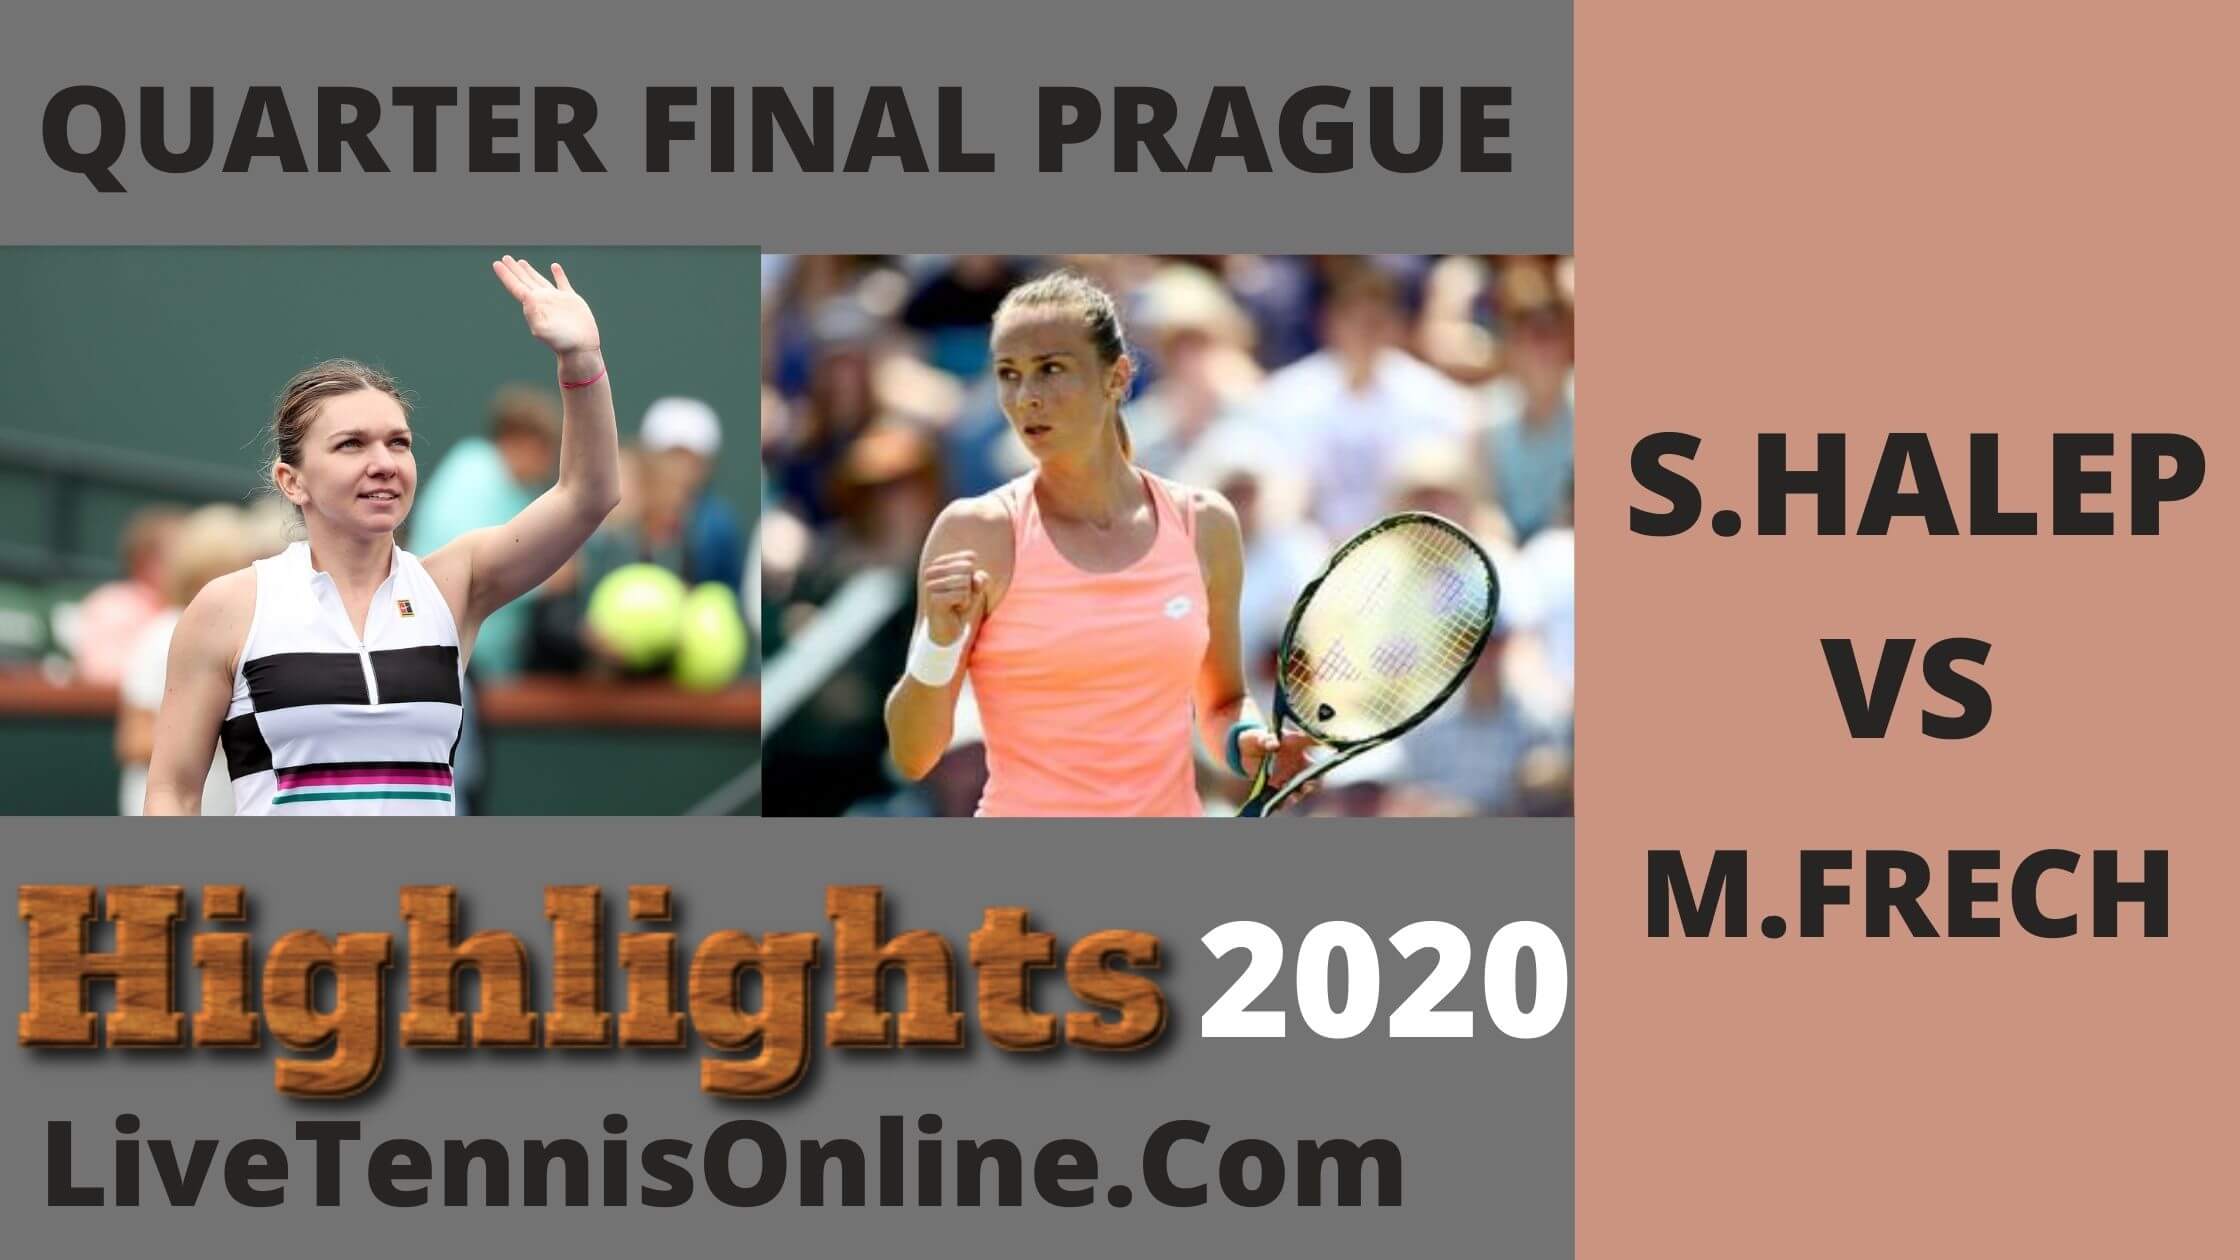 S Halep Vs M Frech QF Highlights 2020 Prague Open